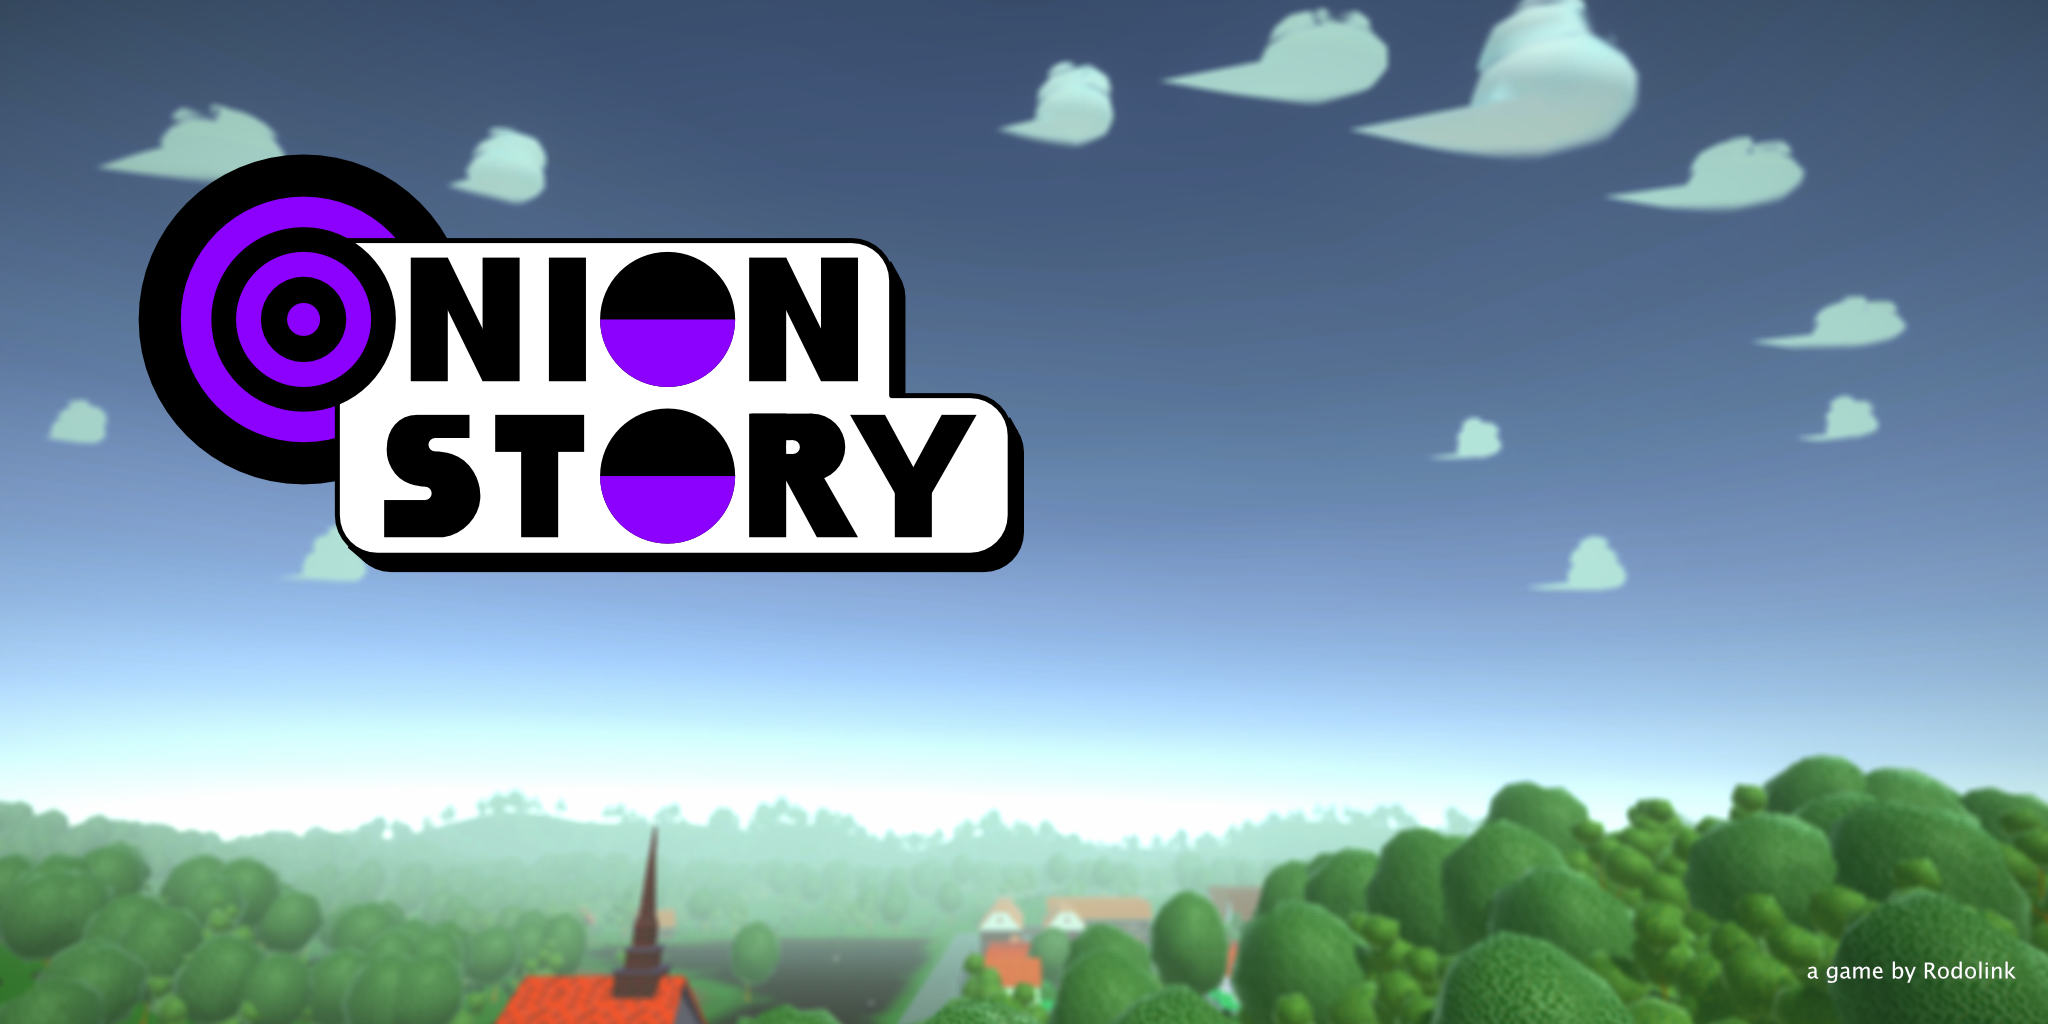 Onion Story